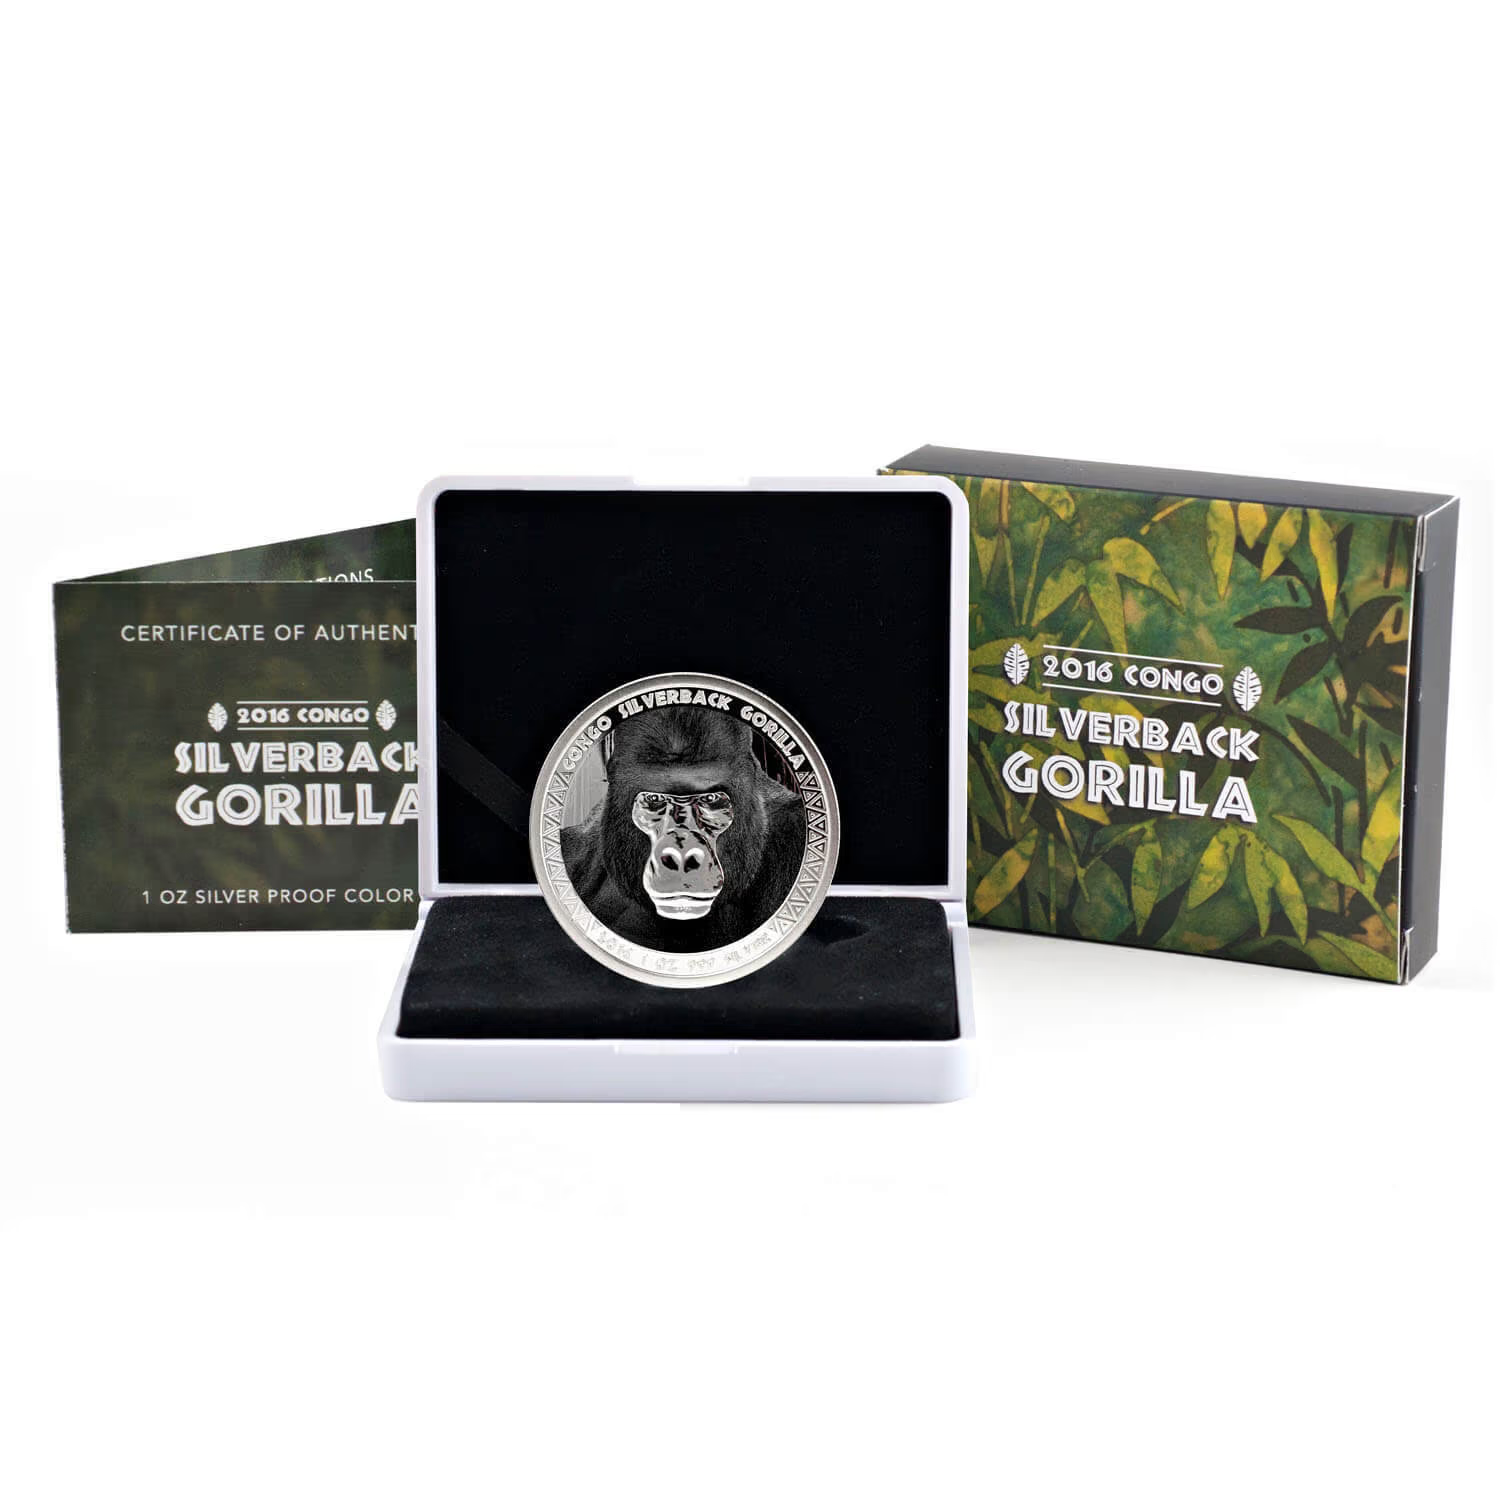 1 Oz Silver Coin 2016 5000 CFA Francs Congo Scottsdale Color Silverback Gorilla-classypw.com-3